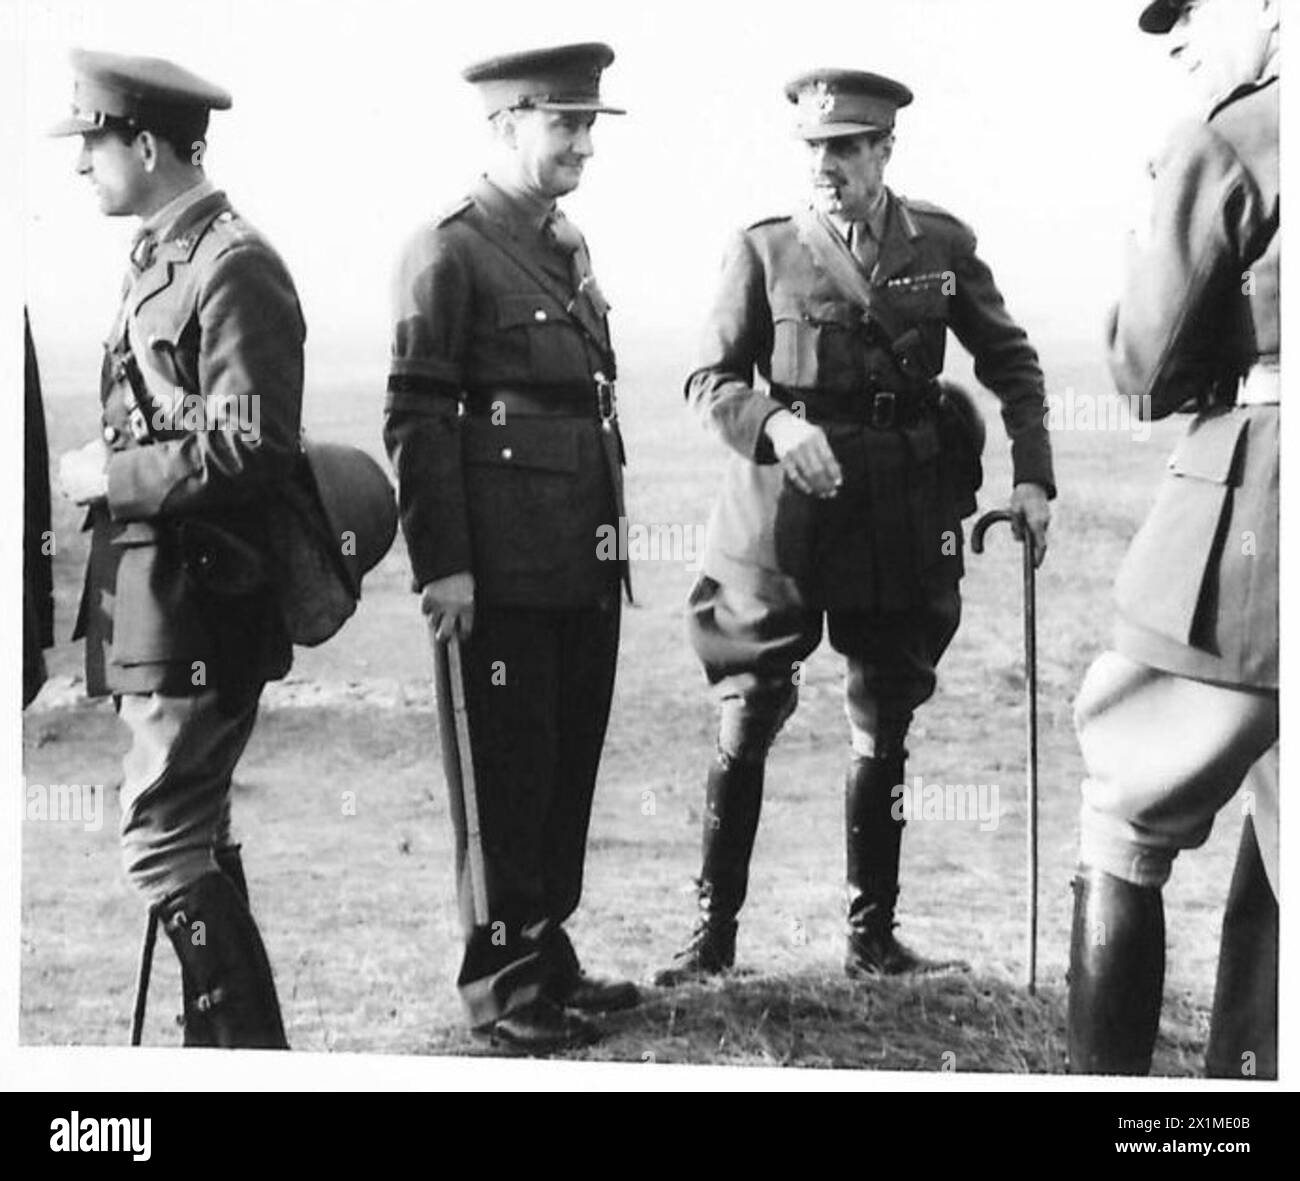 DIE POLNISCHE ARMEE IN GROSSBRITANNIEN, 1940-1947 – Oberst Churchill (Mitte links) und General A. T. Miller vom schottischen Kommando (Mitte rechts), im Gespräch während der Übung. Foto gemacht in Elie, Fifeshire. Eine Demonstration des Trainings der 4. Cadre Rifle Brigade (zukünftige 1. Polnische unabhängige Fallschirmbrigade), gefolgt von einer Übung, bei der vollständig ausgebildete Fallschirmjäger eingesetzt wurden, wurde von General Władysław Sikorski, dem C-in-C der polnischen Streitkräfte, beobachtet. Der erste Kurs der Schulung ist das Lernen der richtigen Landeweise. Dies wird mittels trai gelernt Stockfoto